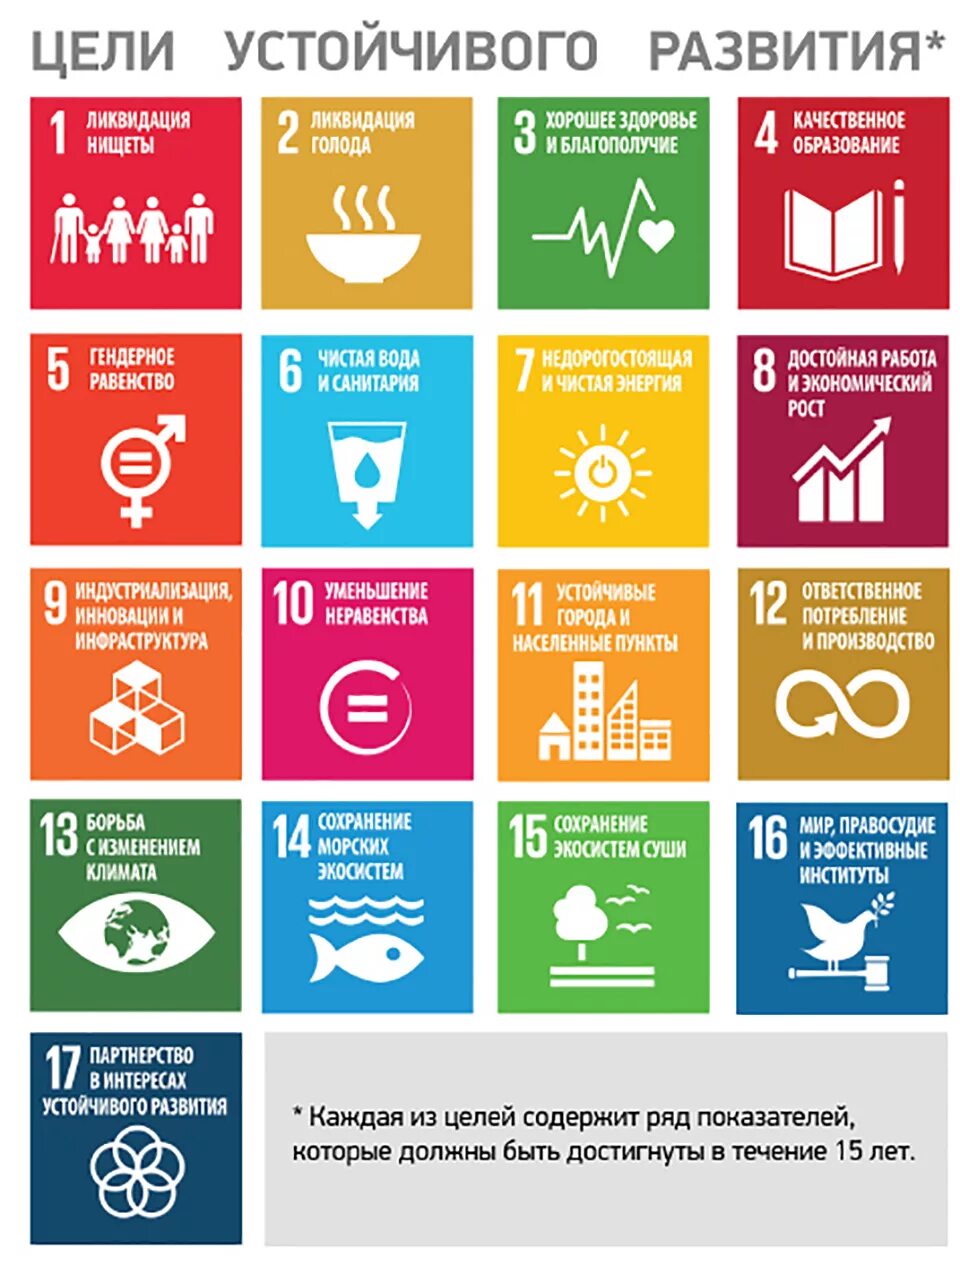 17 Целей устойчивого развития ООН до 2030. ООН цели устойчивого развития до 2030 года. Цели устойчивого развития на период до 2030 года Беларусь. Цели устойчивого развития. Цели оон 2015